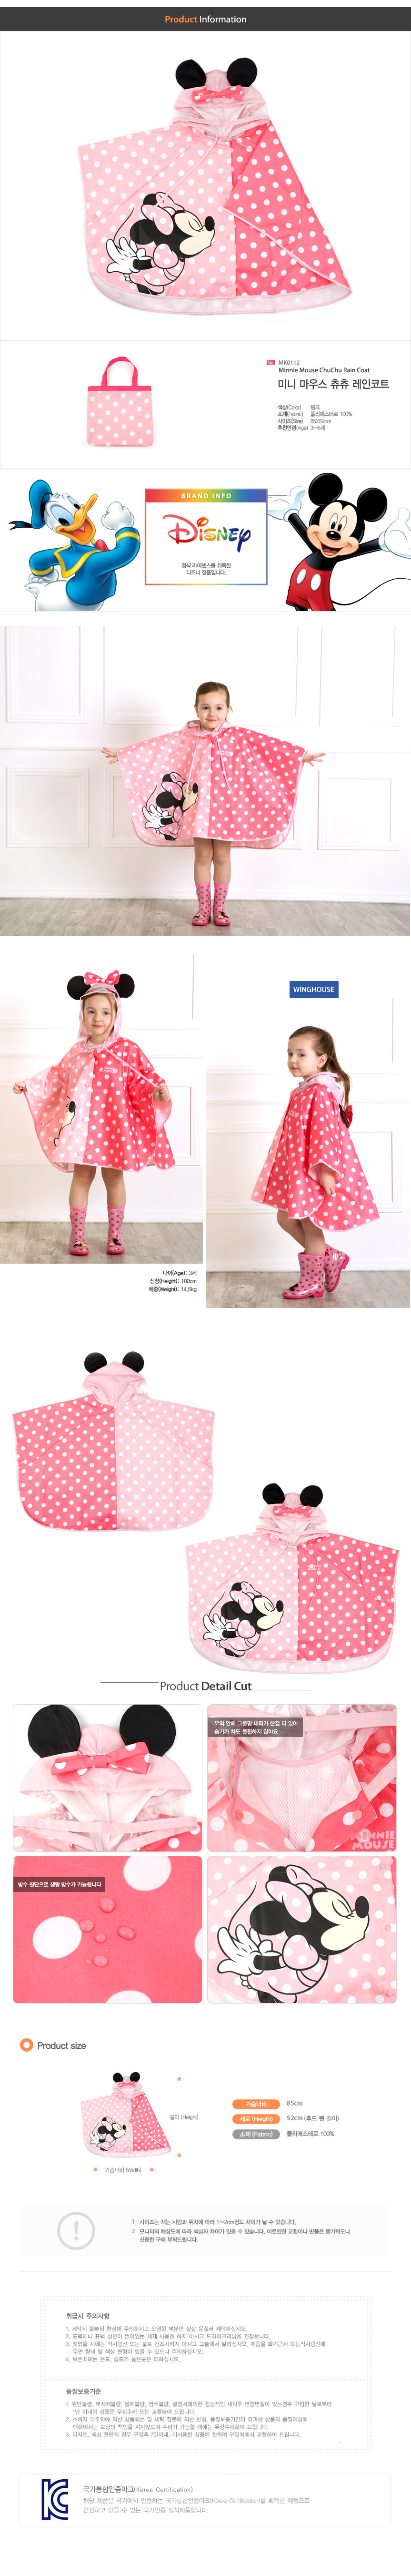 韓國winghouse迪士尼系列兒童傘狀斗篷式造型雨衣【MK0112】米妮